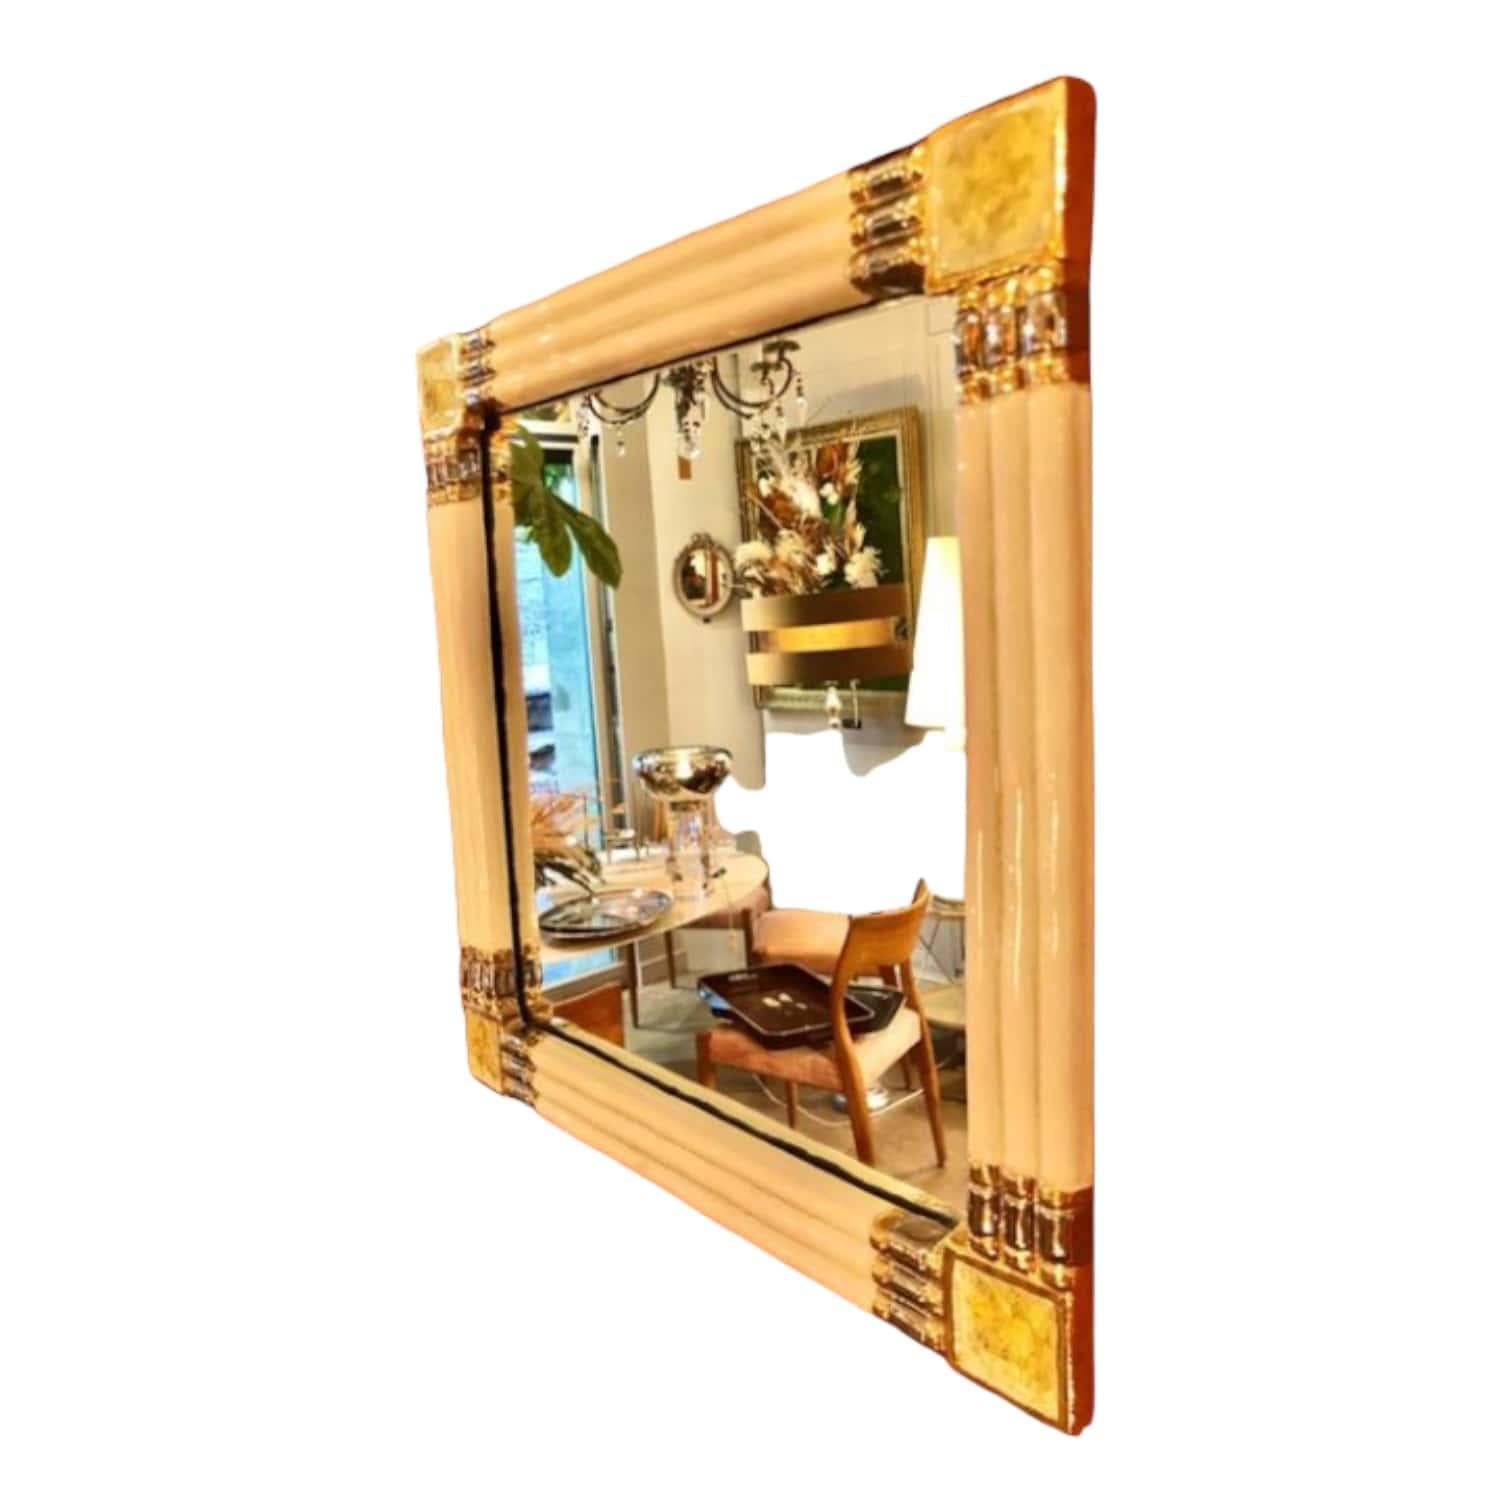 Découvrez ce magnifique miroir de Marion de Crecy, la fille de Mithé Espelt, véritable œuvre d'art en céramique émaillée. Conçu en France vers 1970, cet objet ancien est un véritable trésor à ajouter à votre collection. Son design unique met en